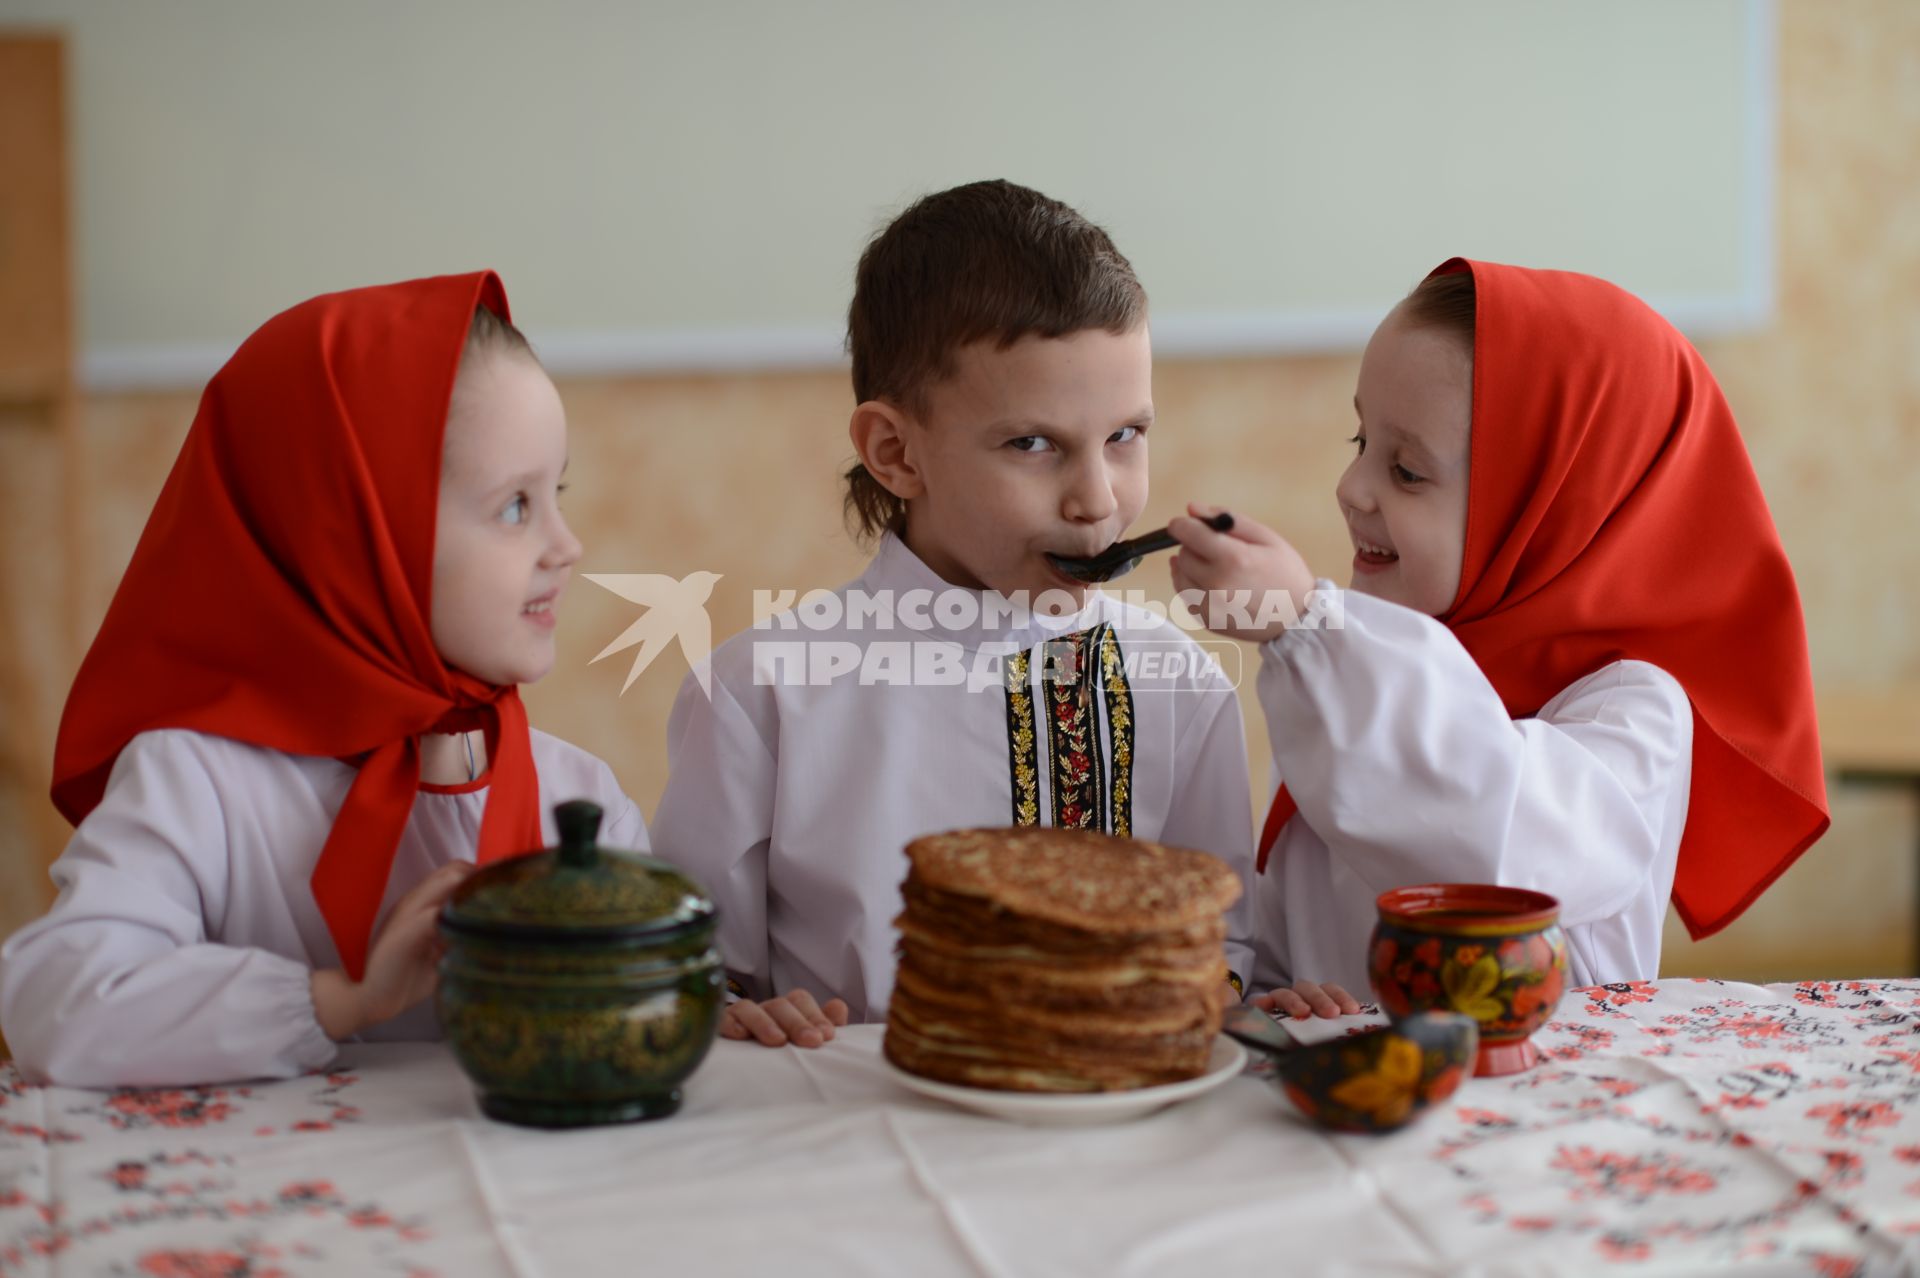 Масленица. На снимке: девочки-близняшки и мальчик в русских народных костюмах сидят за столом с блинами.